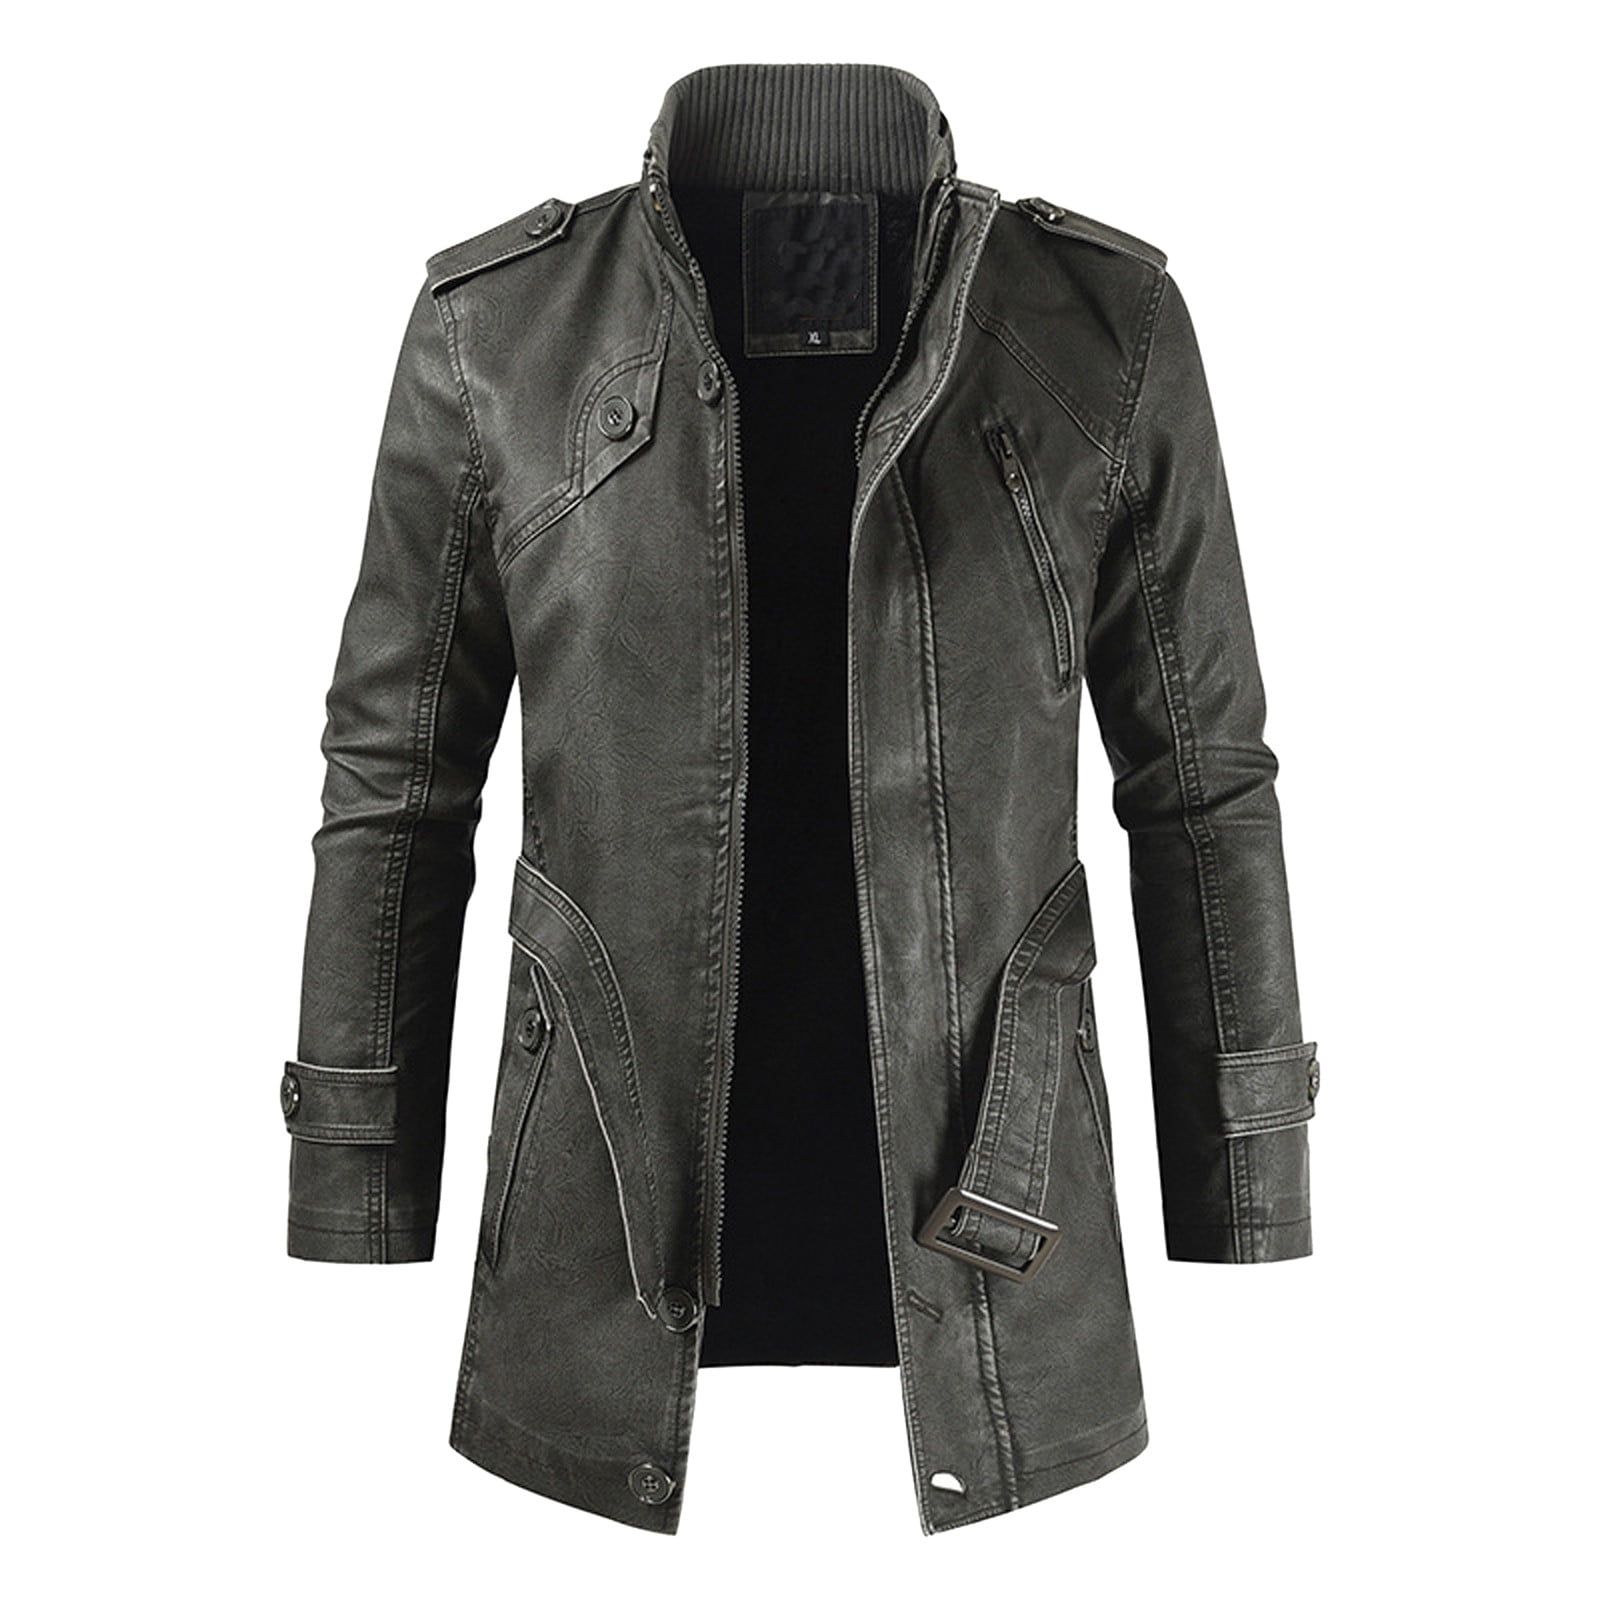 Men's Winter Jacket Coat Casual Leather Jackets Zipper Long Sleeve ...